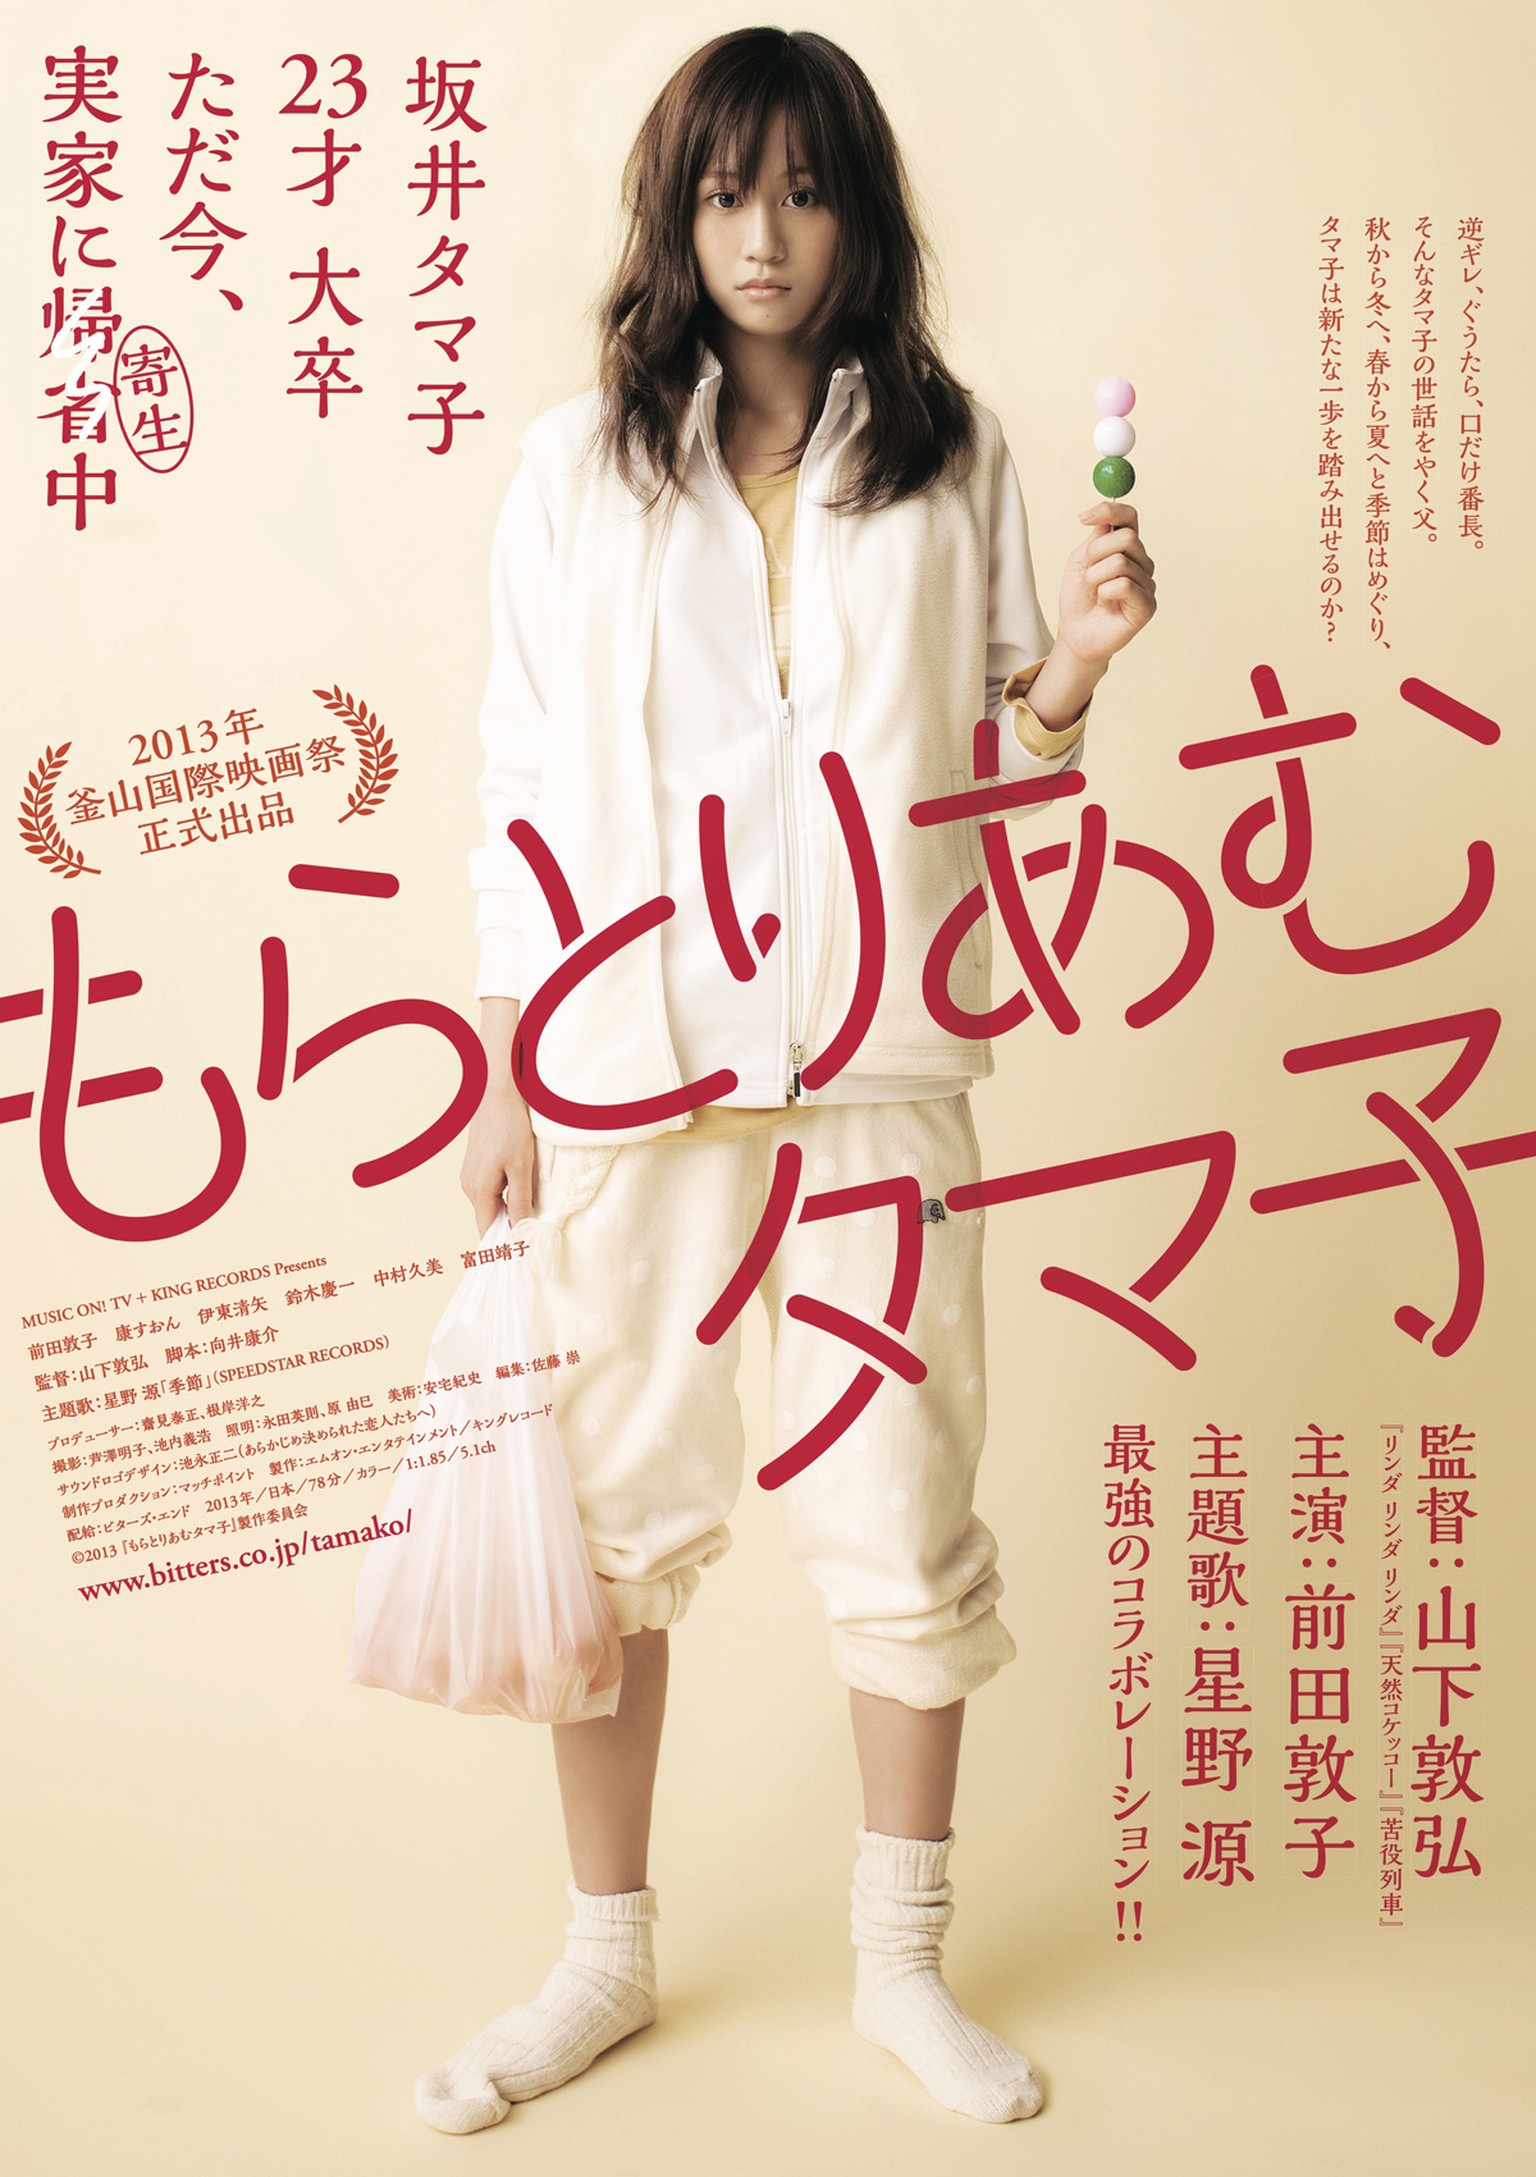 Moratorium in Tamako, japan, Jugendbewegung, sang, asien, kino